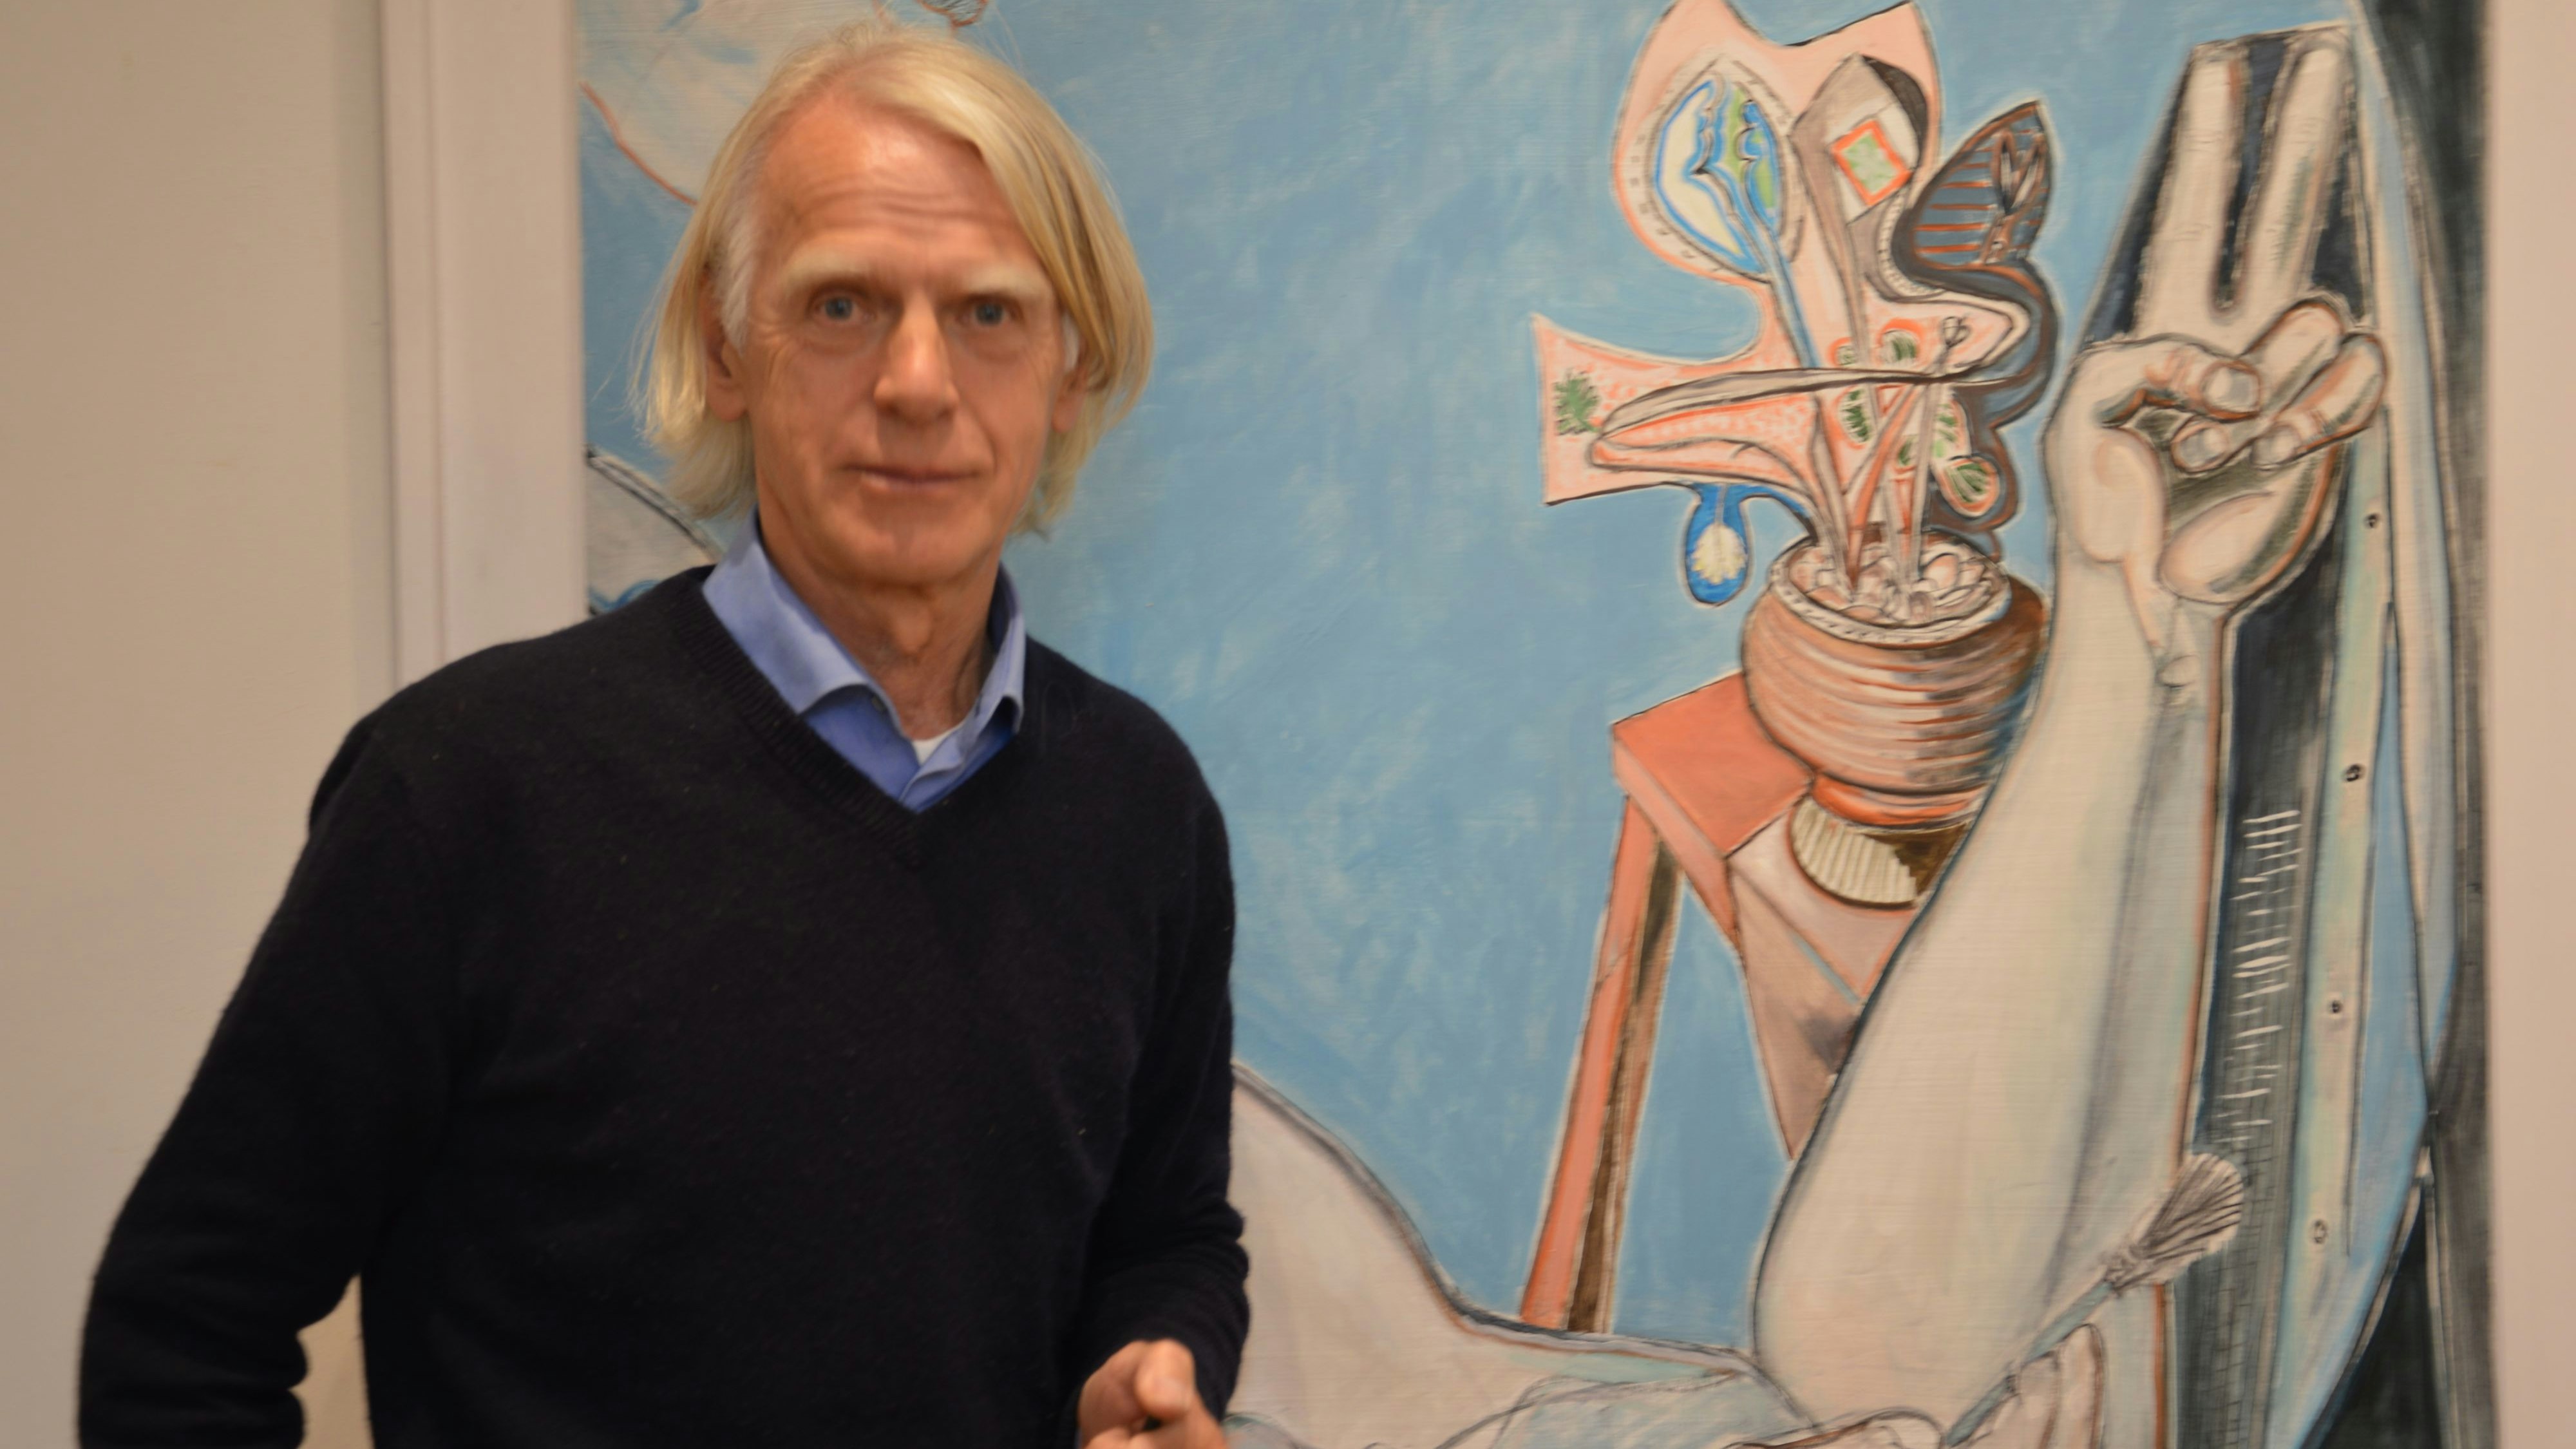 Gibt einen Einblick in seine Arbeit: Der Maler Peter Rüwe öffnet sein Atelier für Hobby-Maler und Kunstinteressierte. Foto: Wienken